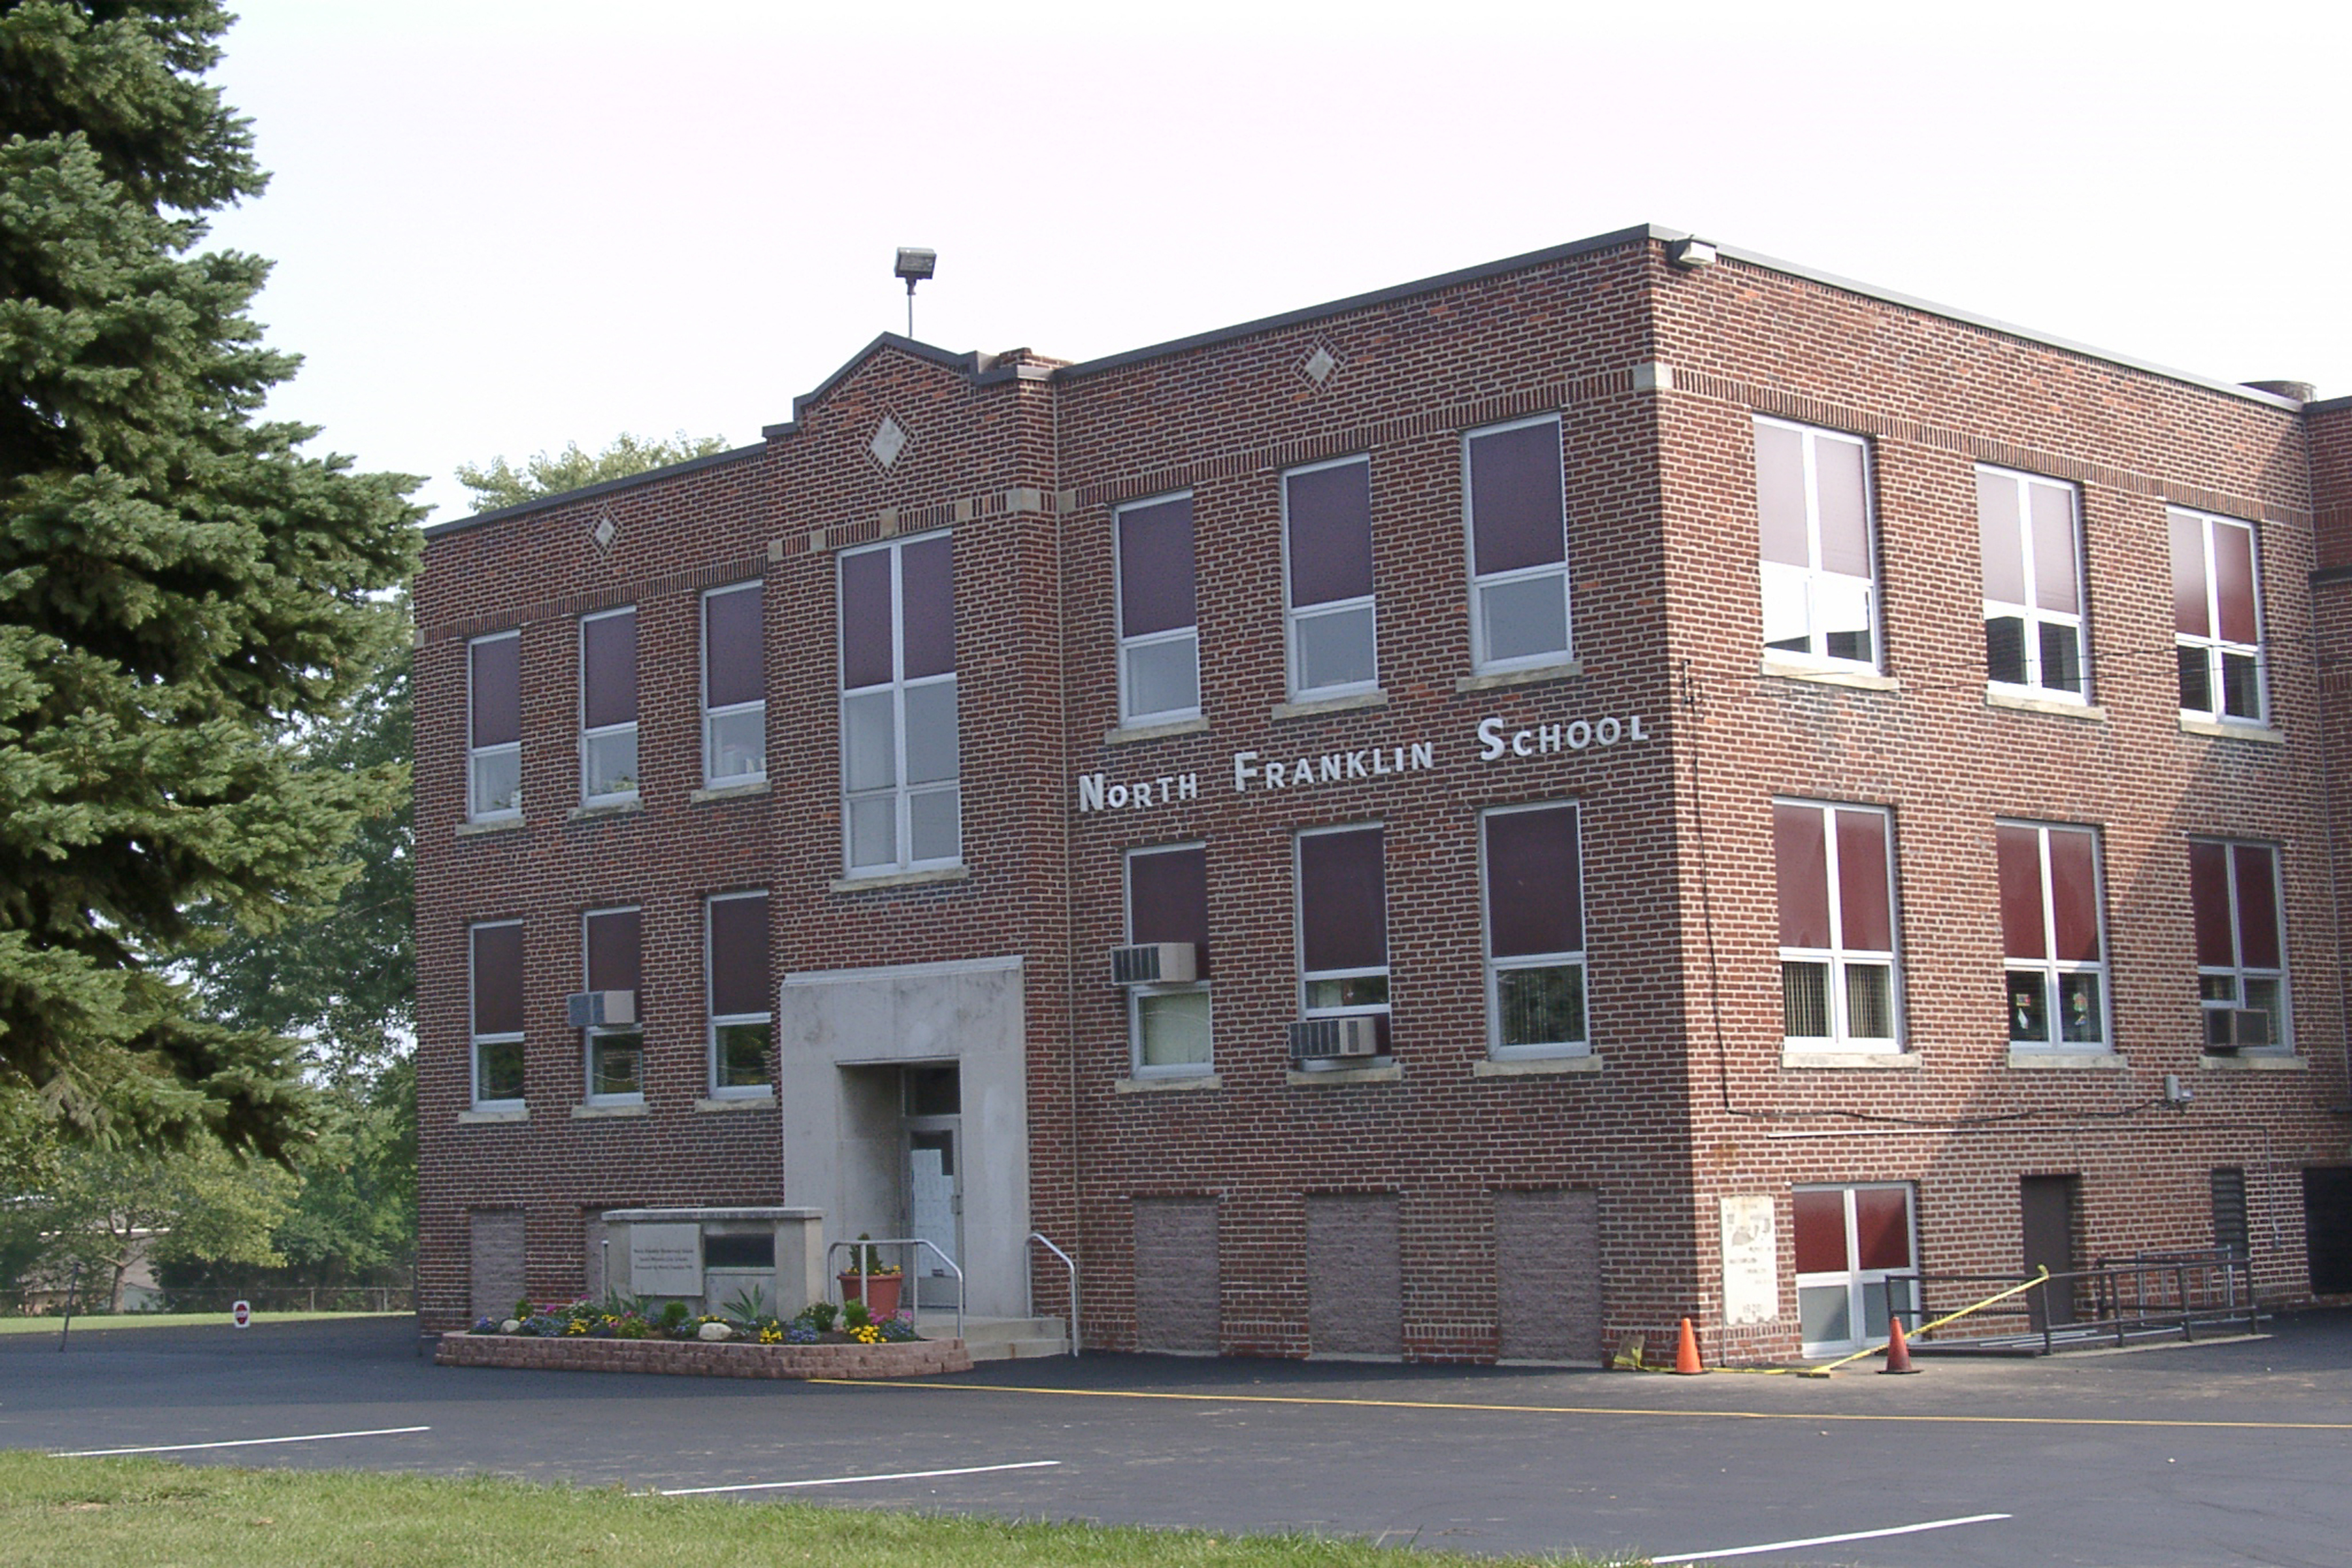 North Franklin School